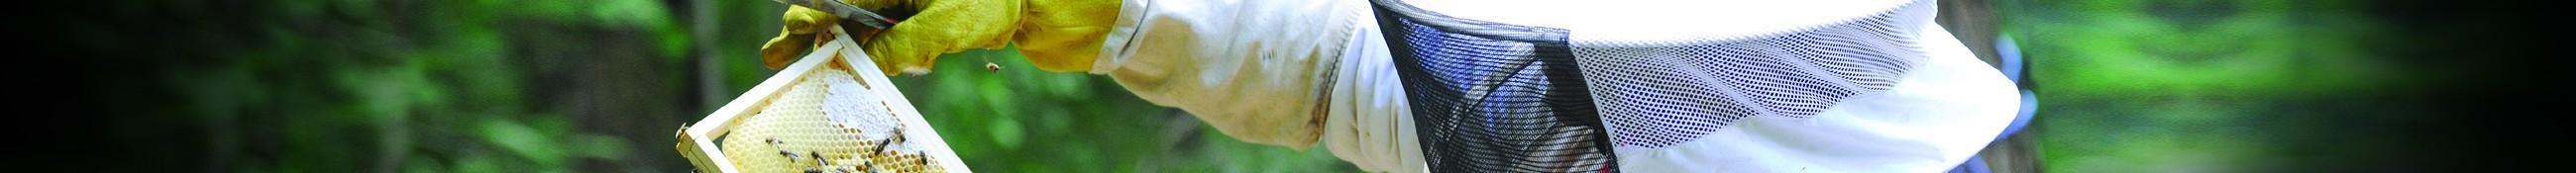 Les gants pour l’apiculture